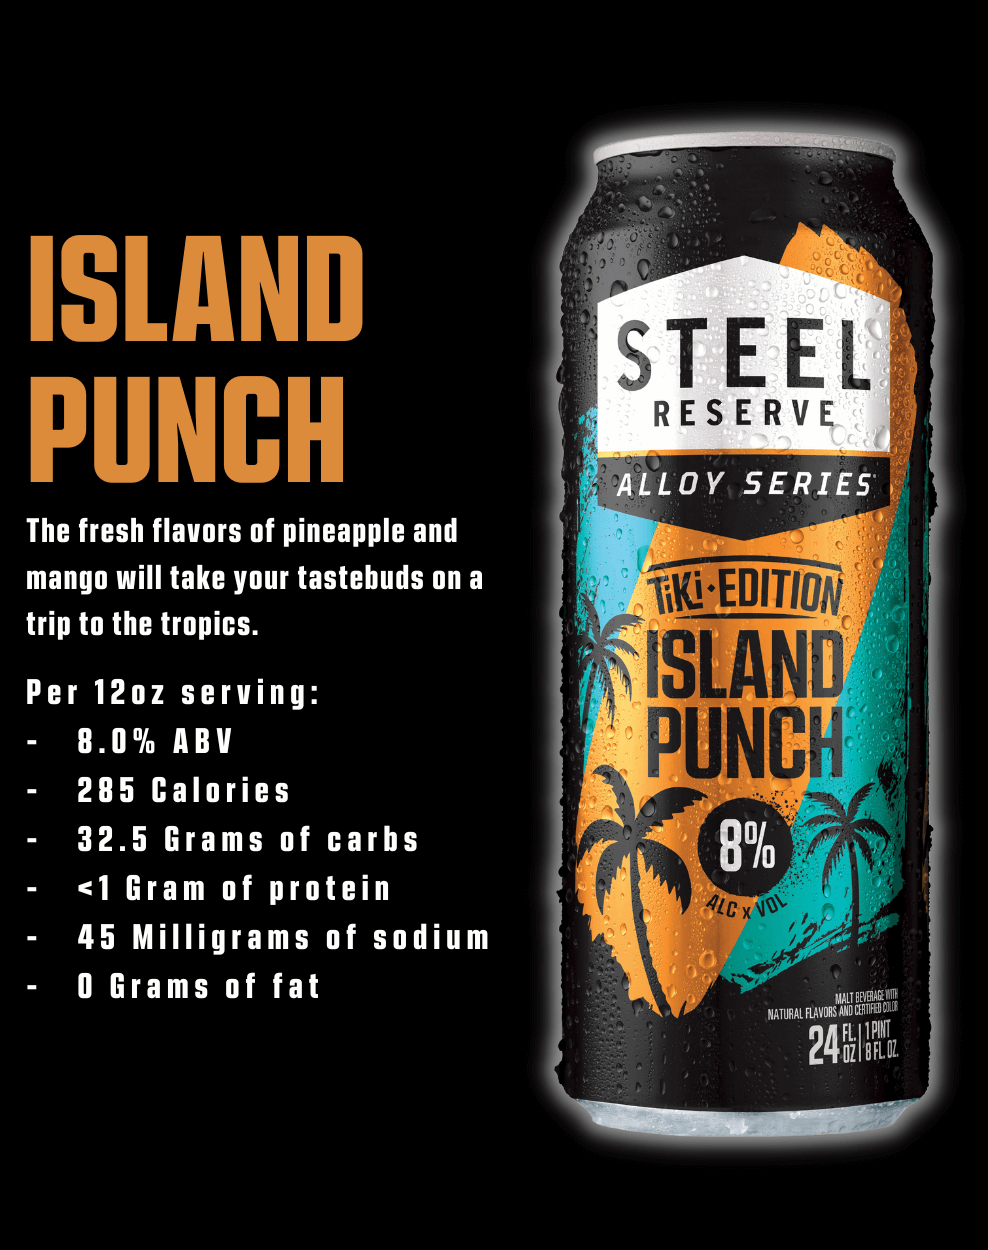 Island Punch description